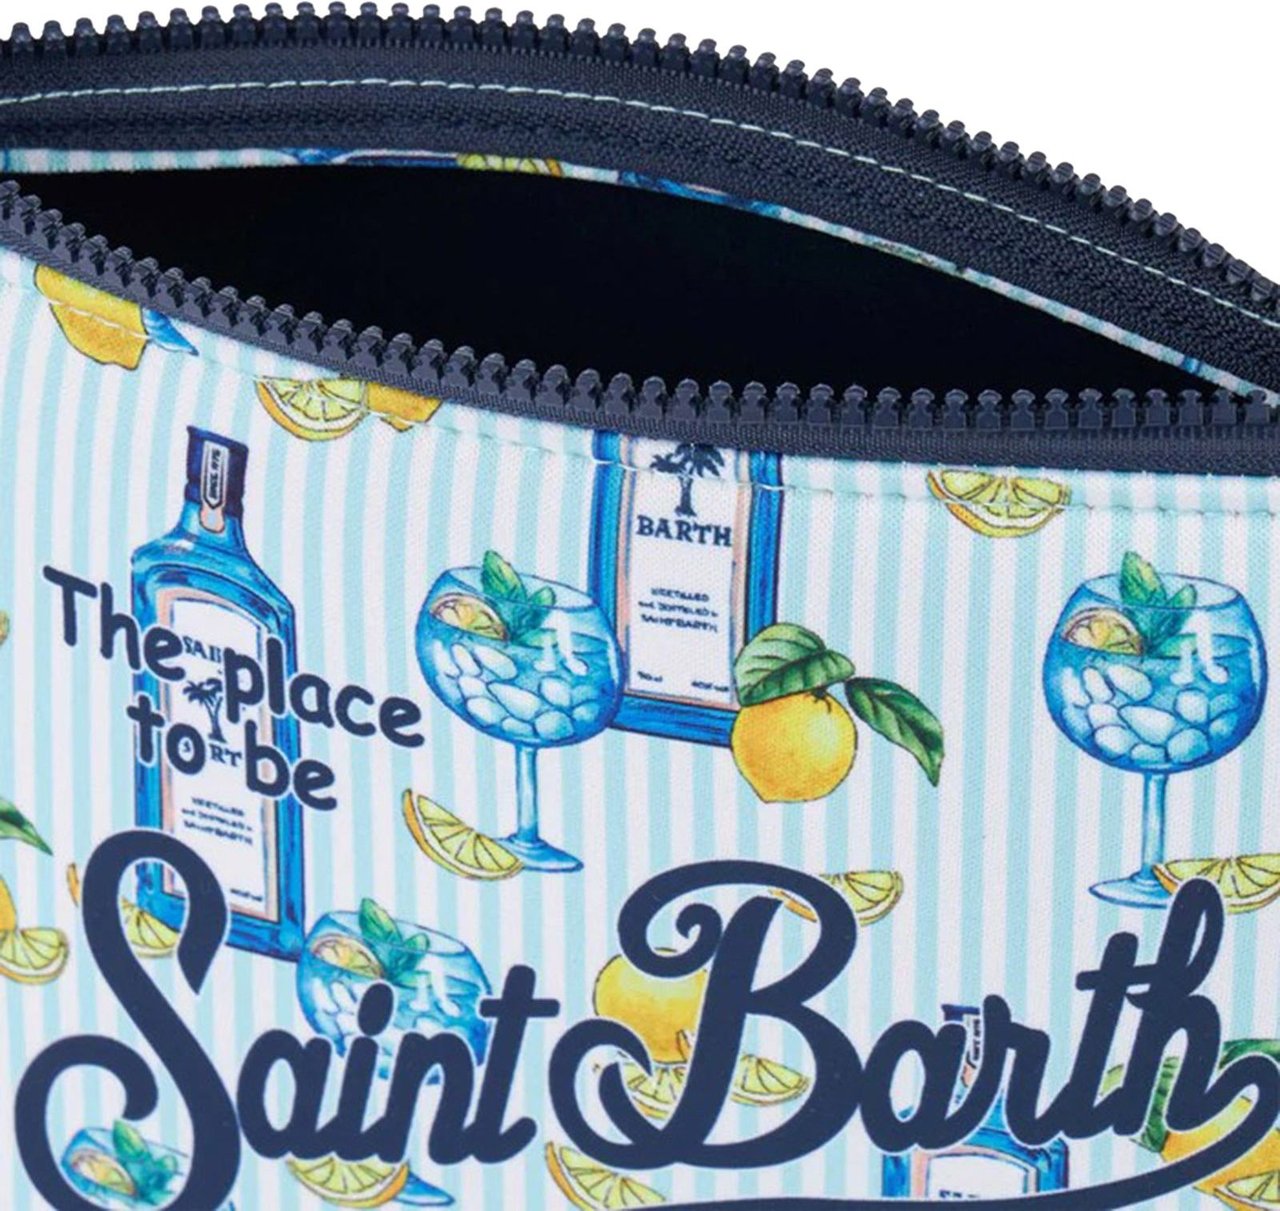 MC2 Saint Barth MC2 Saint Barth Bags.. Blue Blauw